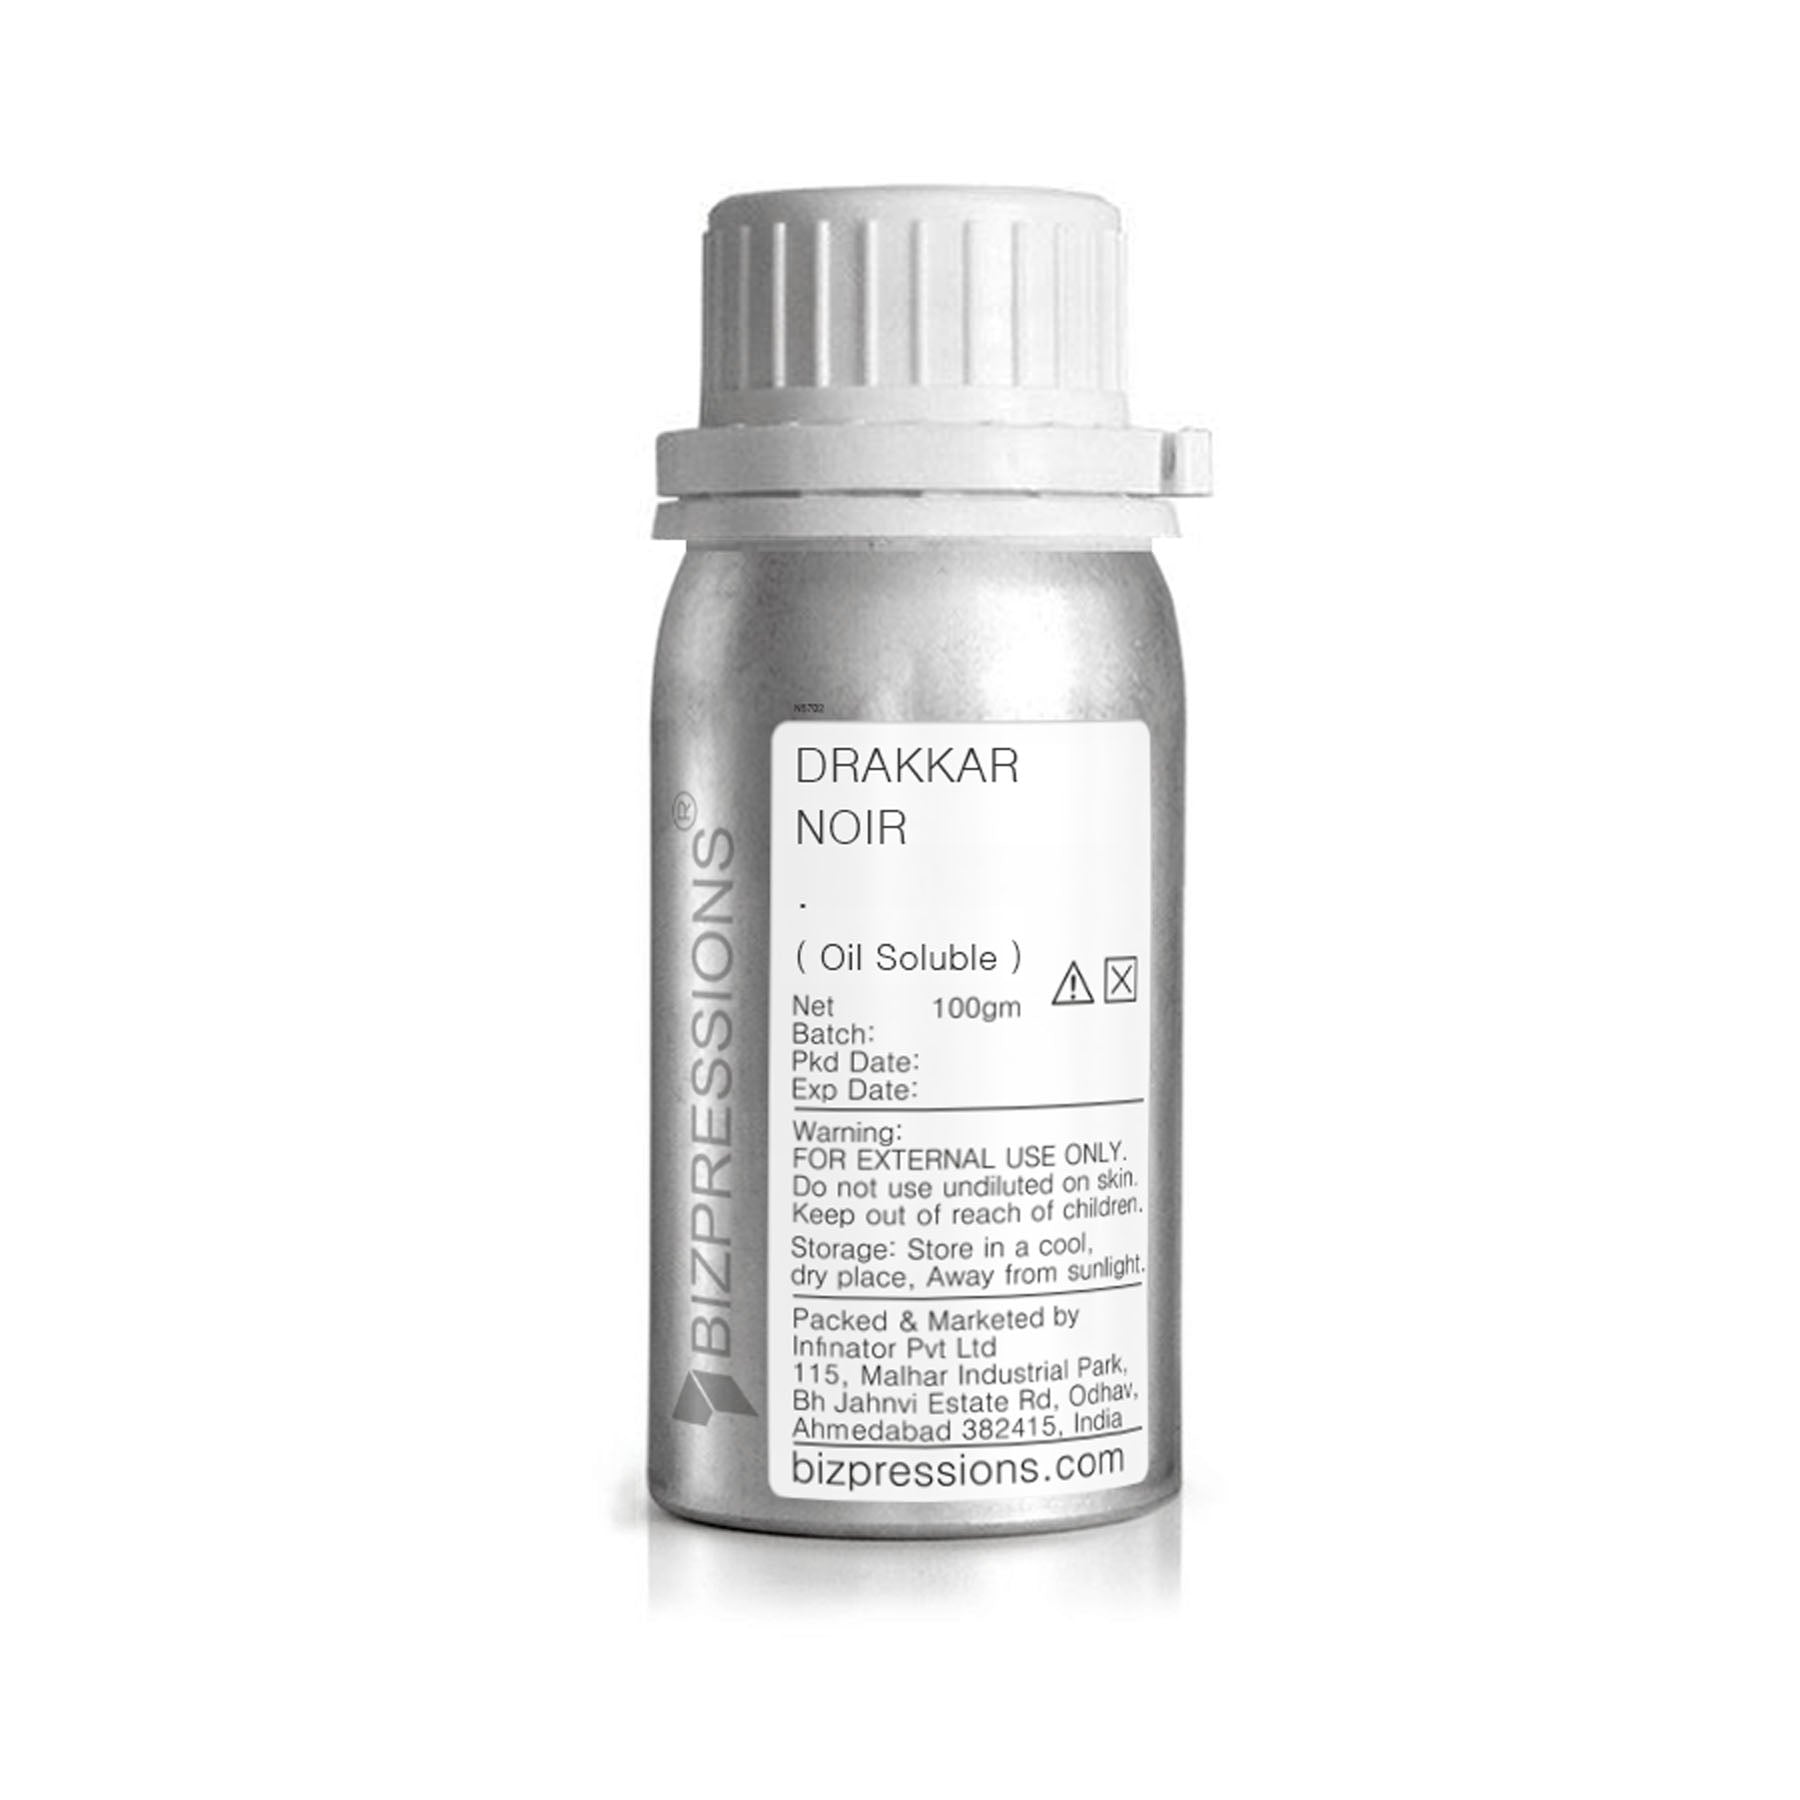 DRAKKAR NOIR - Fragrance ( Oil Soluble ) - 100 gm